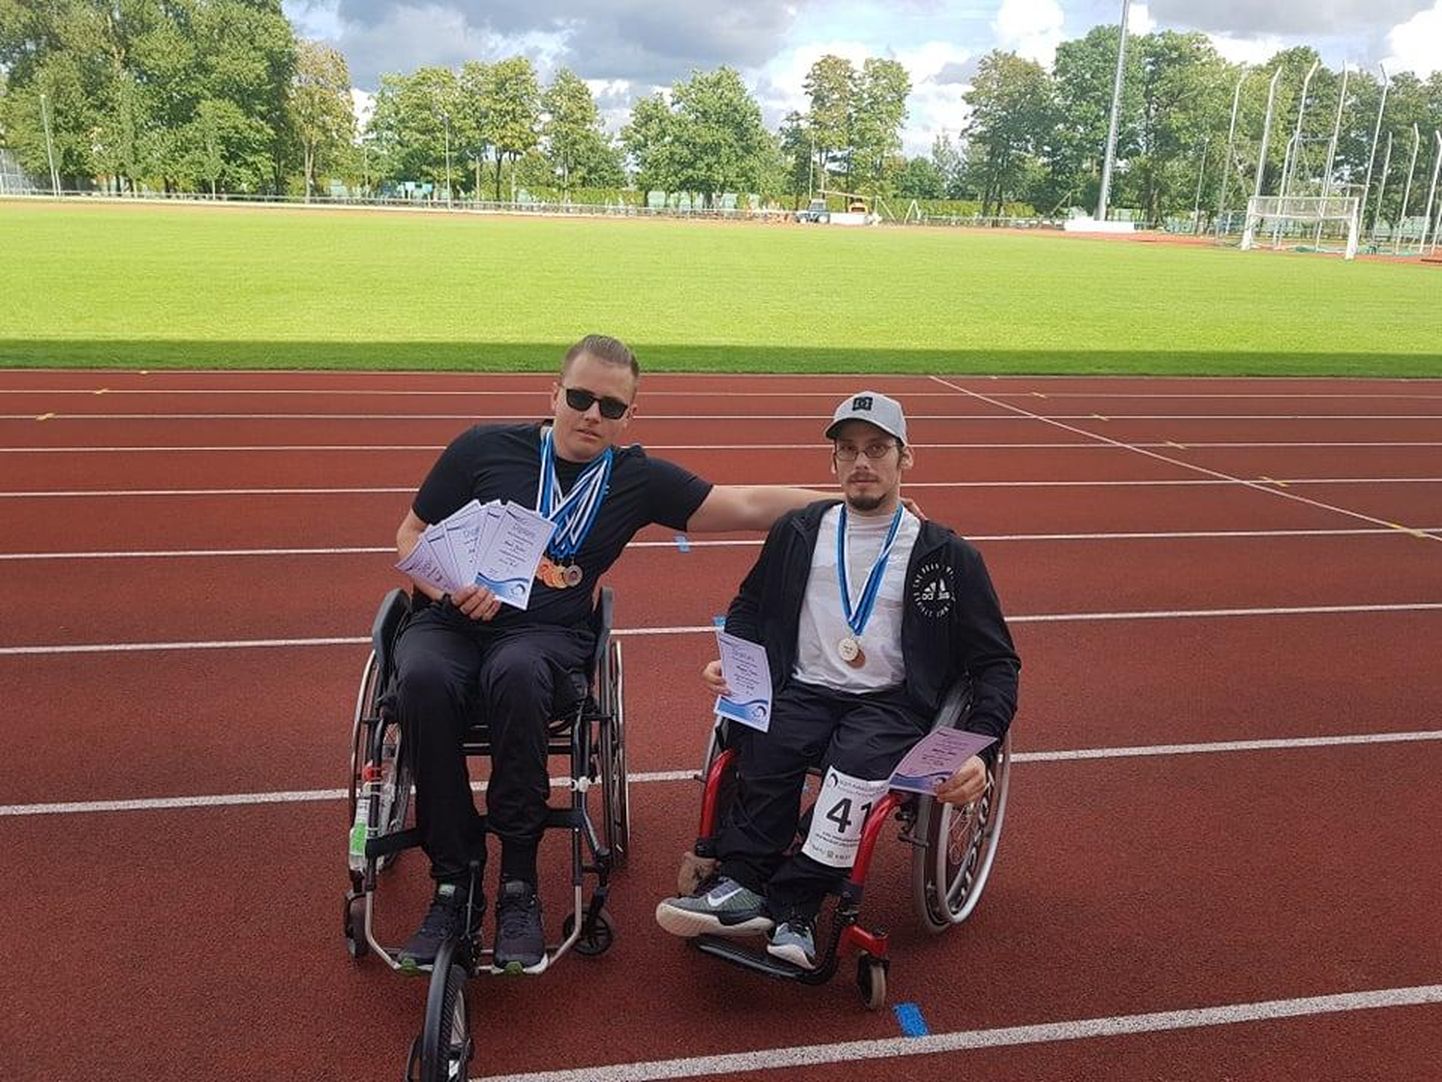 Eesti Paraolümpiakomitee kergejõustiku meistrivõistlustel osalesid edukalt pärnakad Karel Jürisoo (vasakul) ja Kaspar Vomm (paremal).